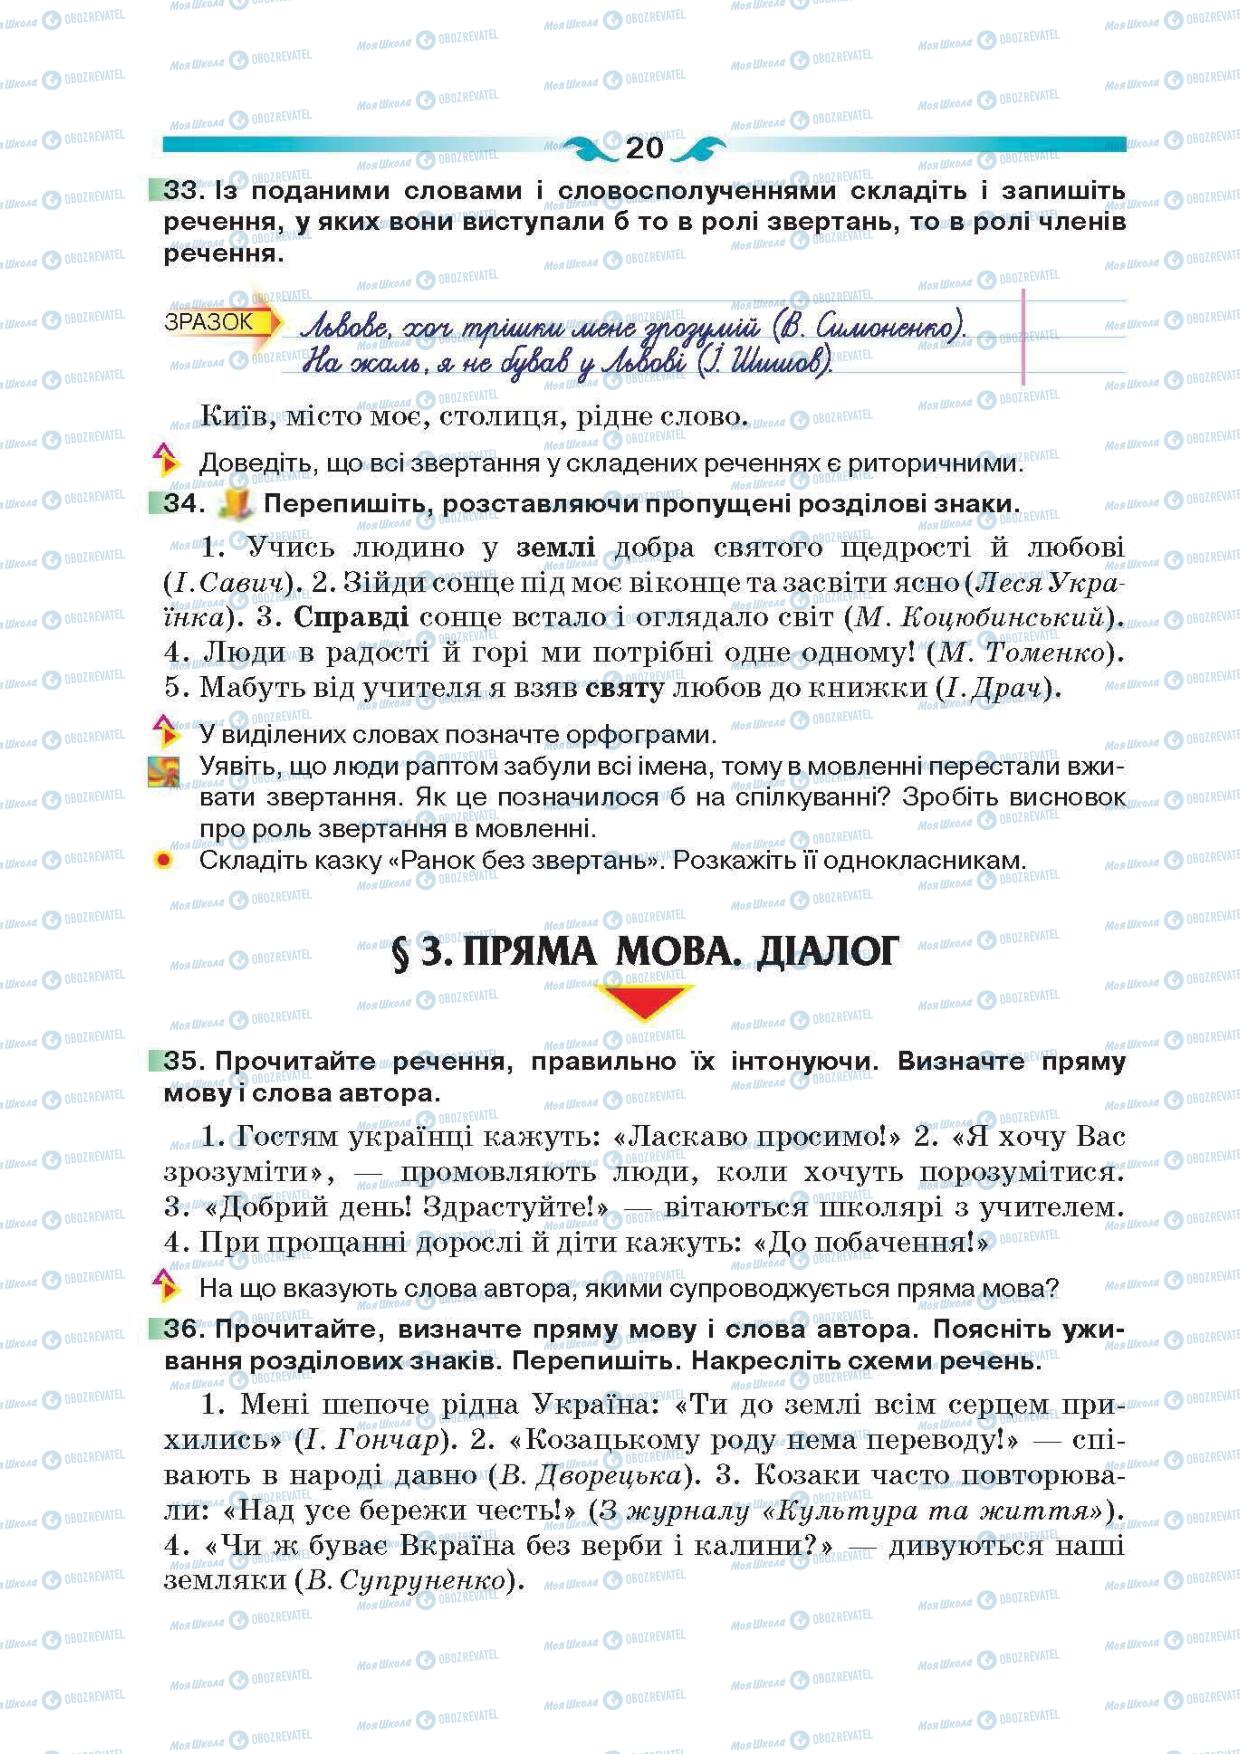 Підручники Українська мова 6 клас сторінка 20